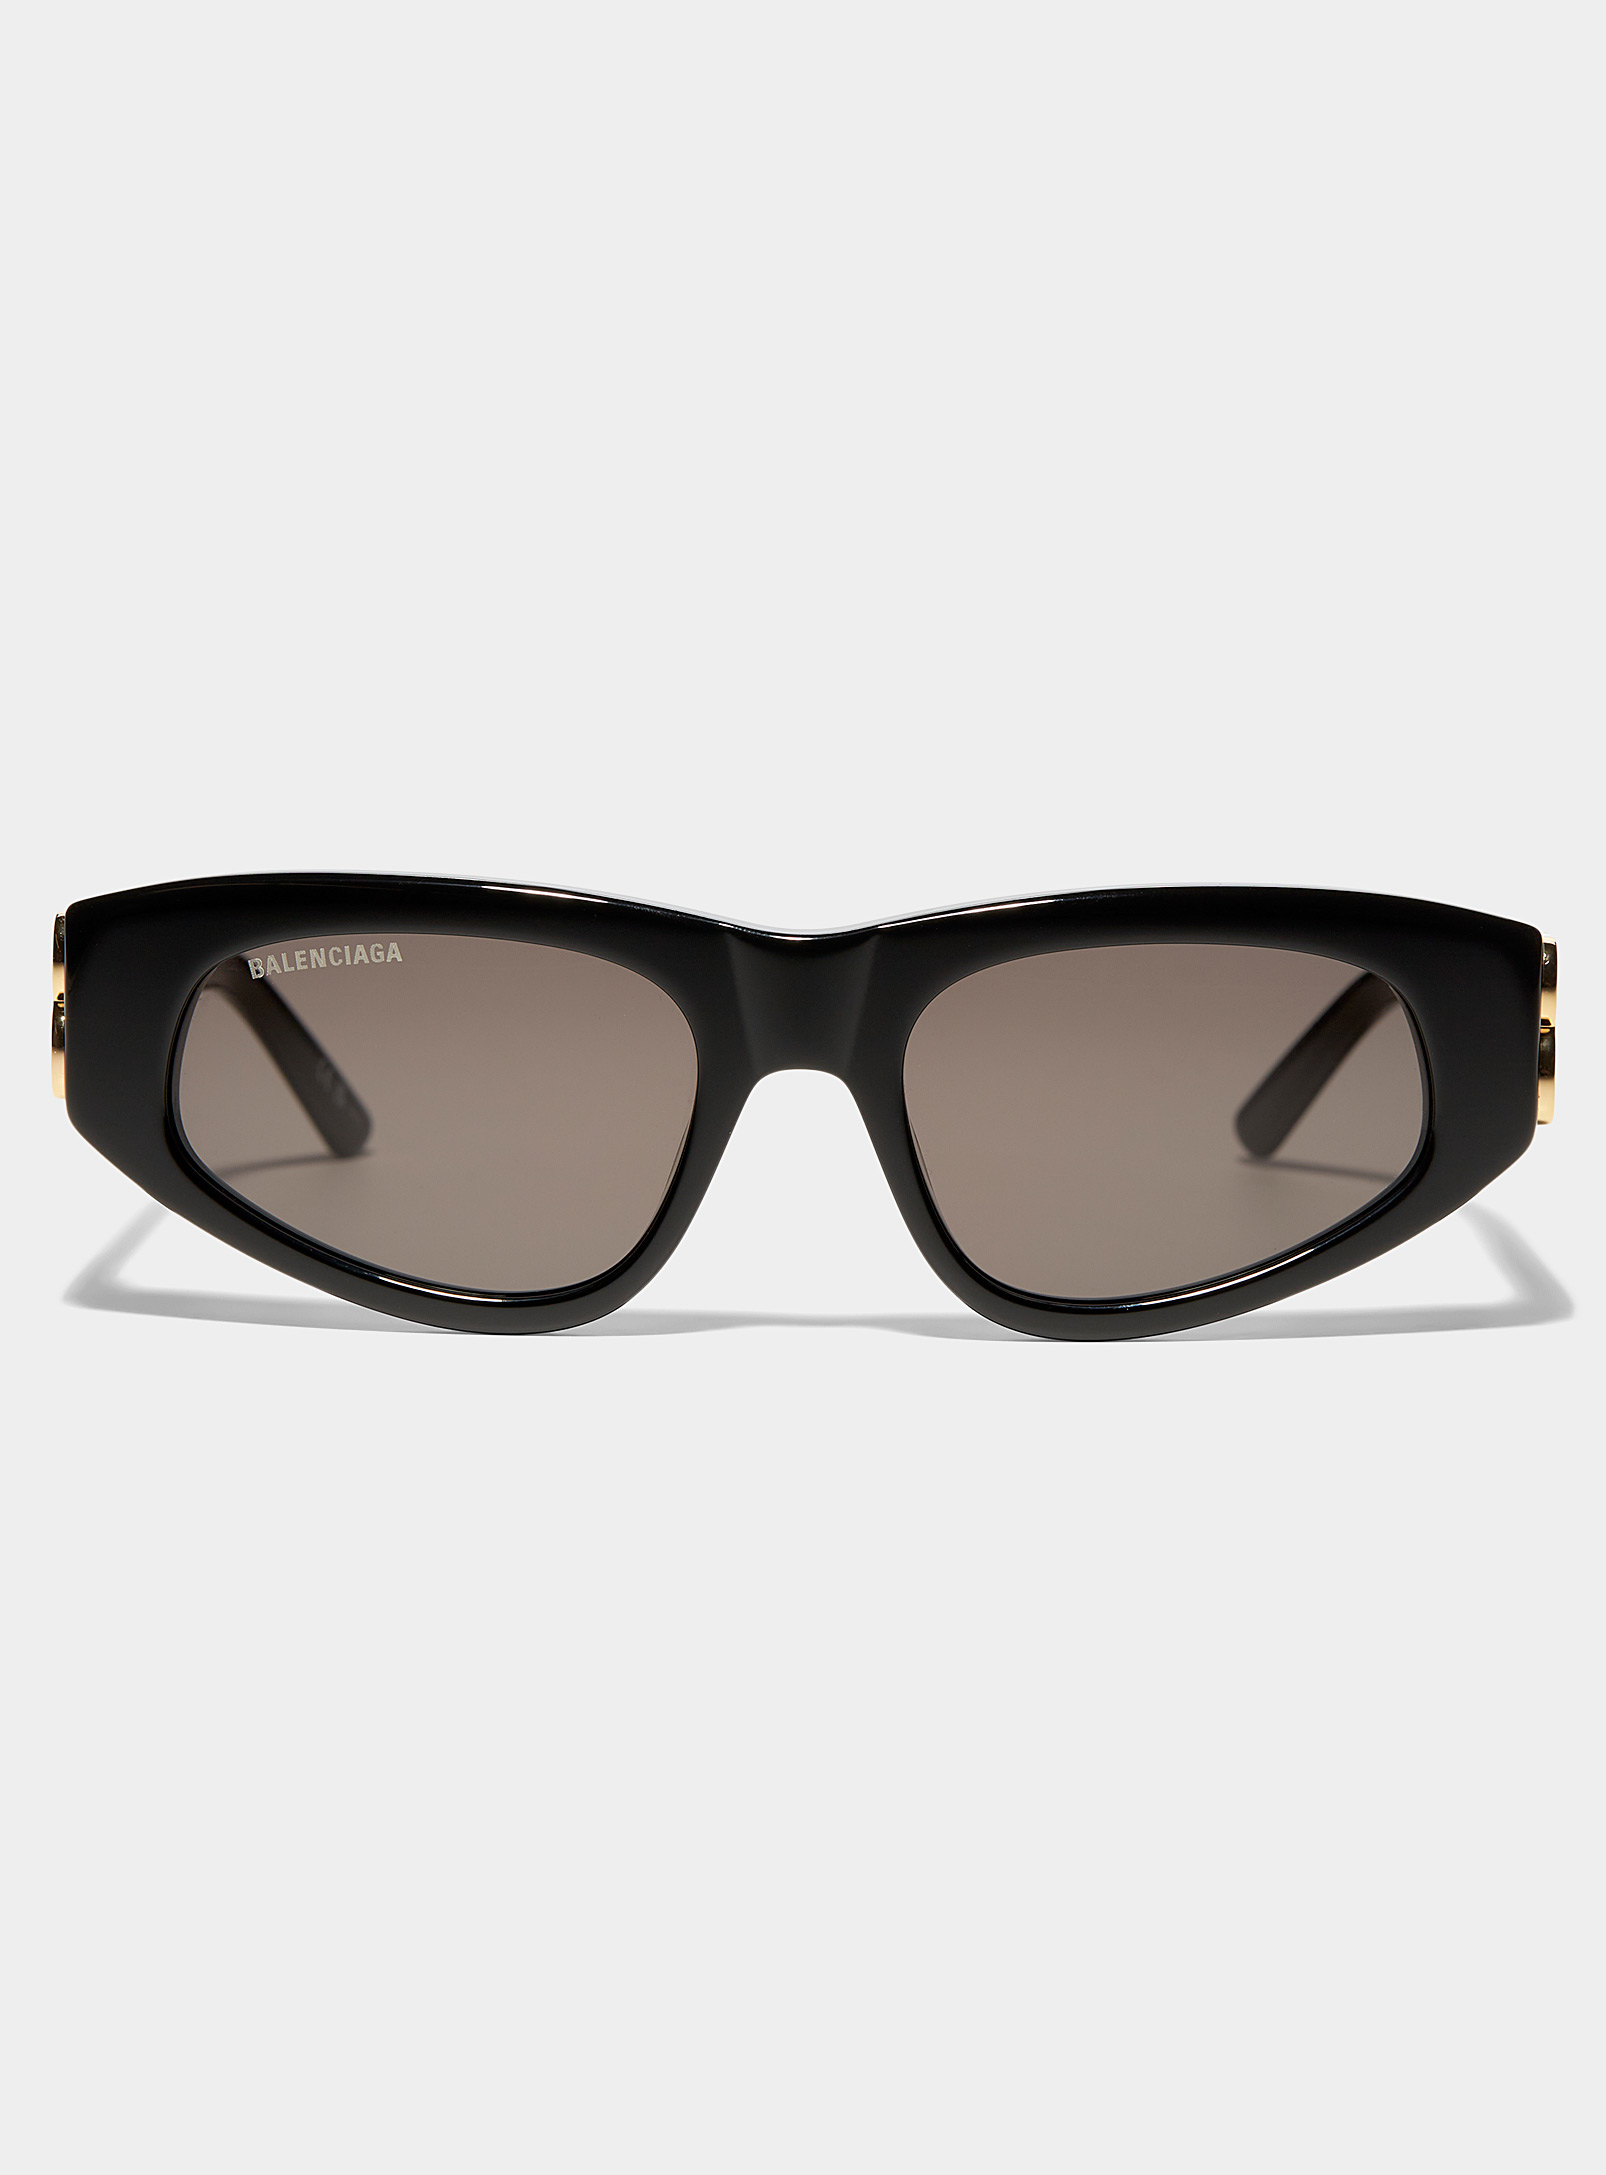 Balenciaga Golden B Black Sunglasses | ModeSens